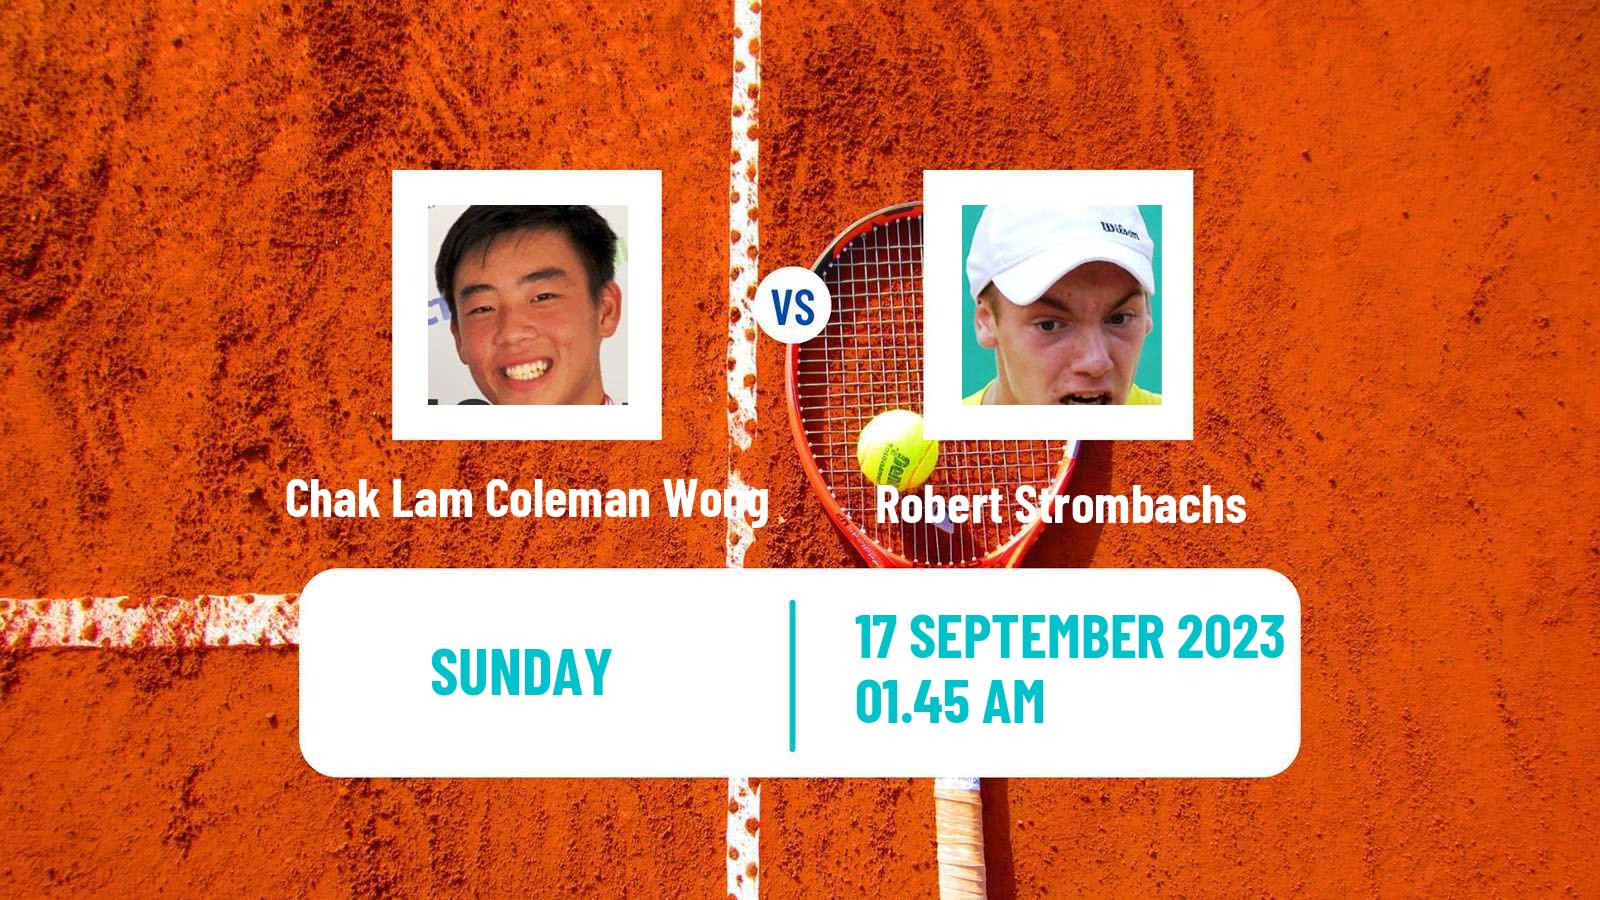 Tennis Davis Cup World Group II Chak Lam Coleman Wong - Robert Strombachs